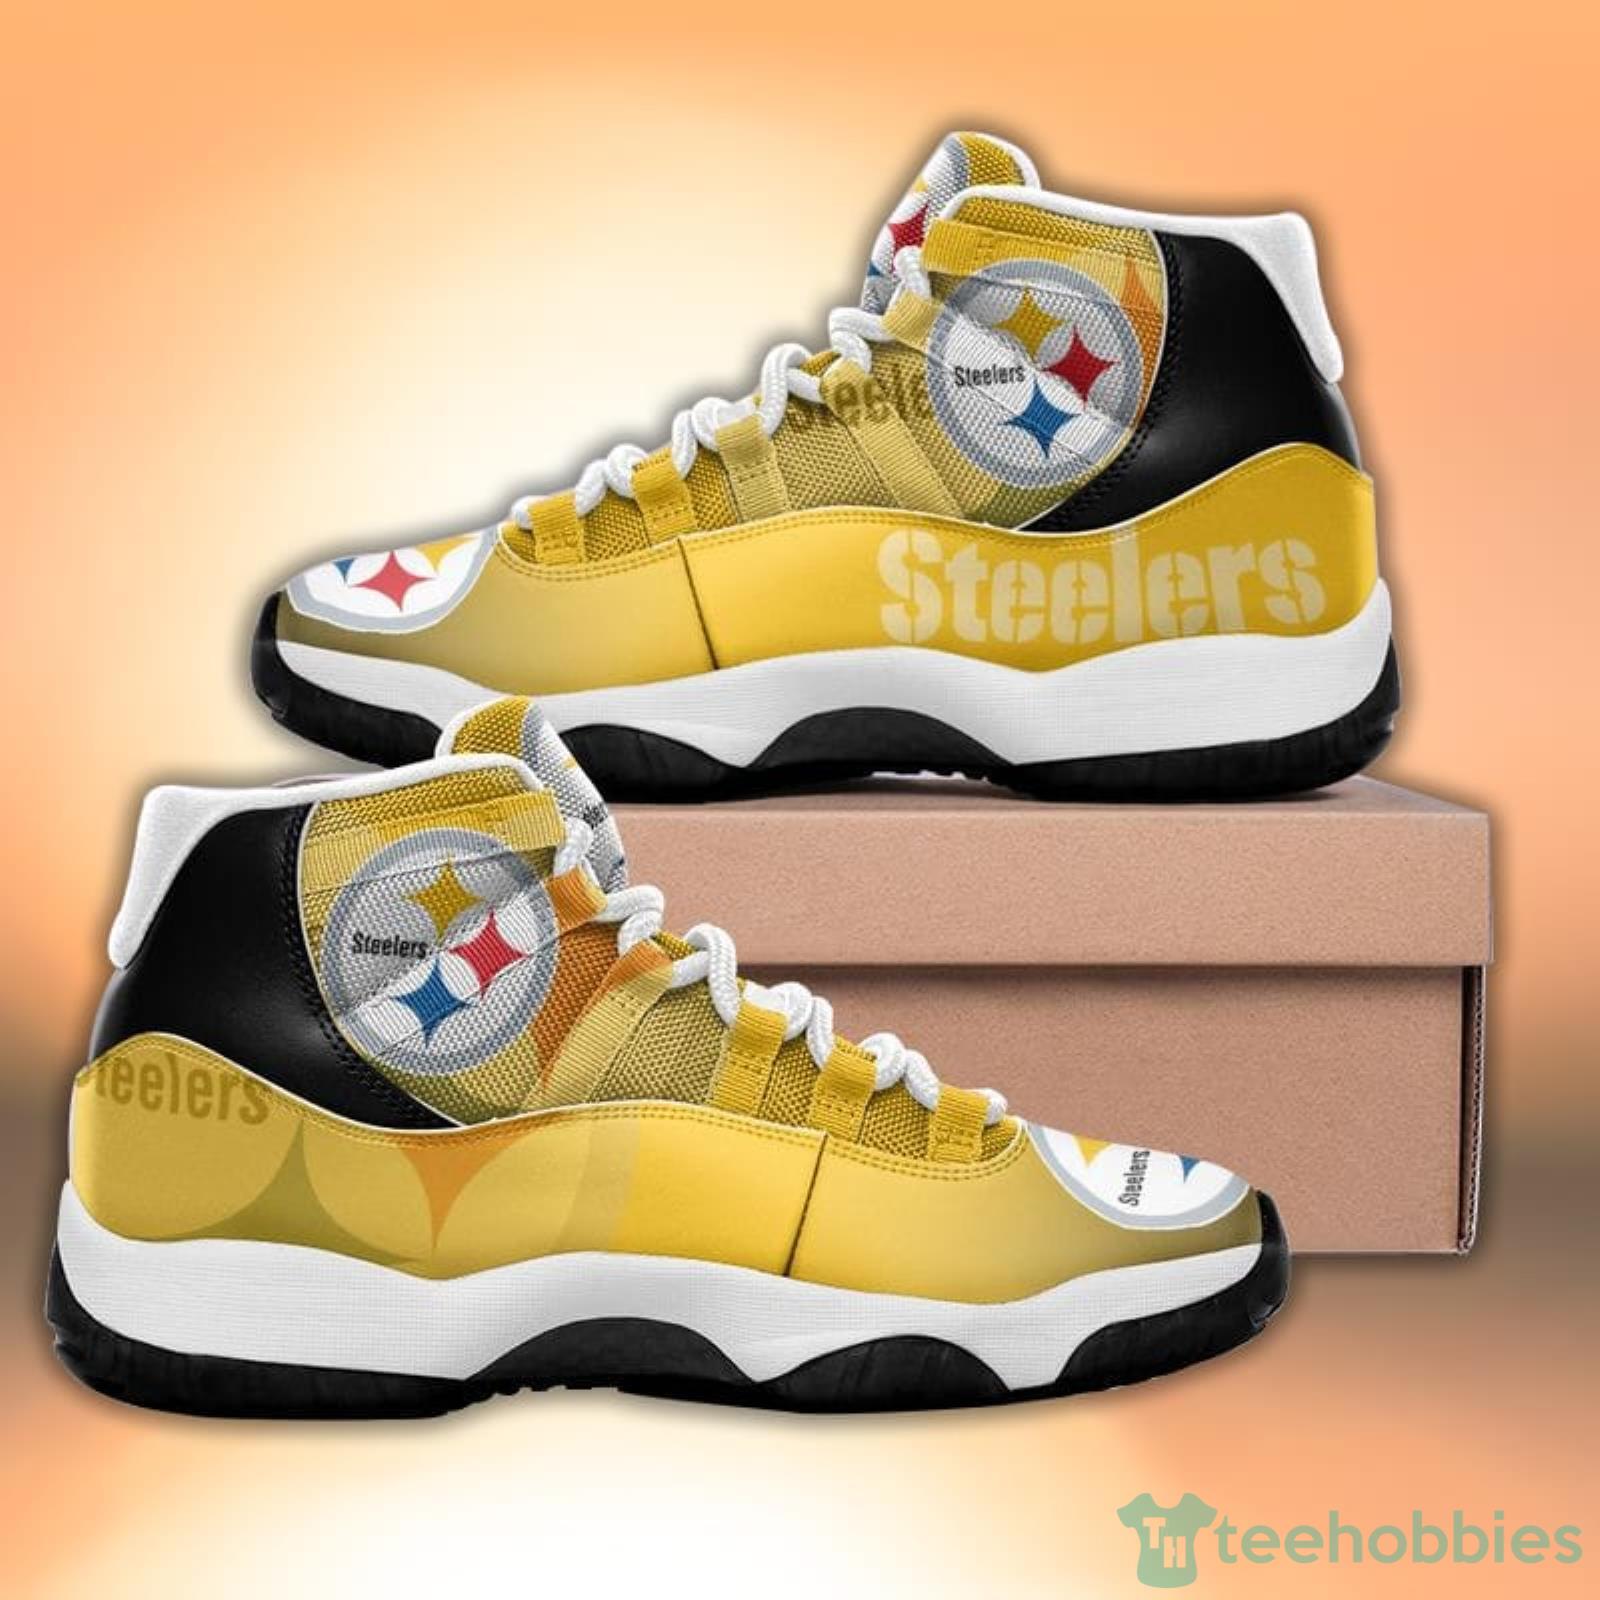 Pittsburgh Steelers Sneakers –